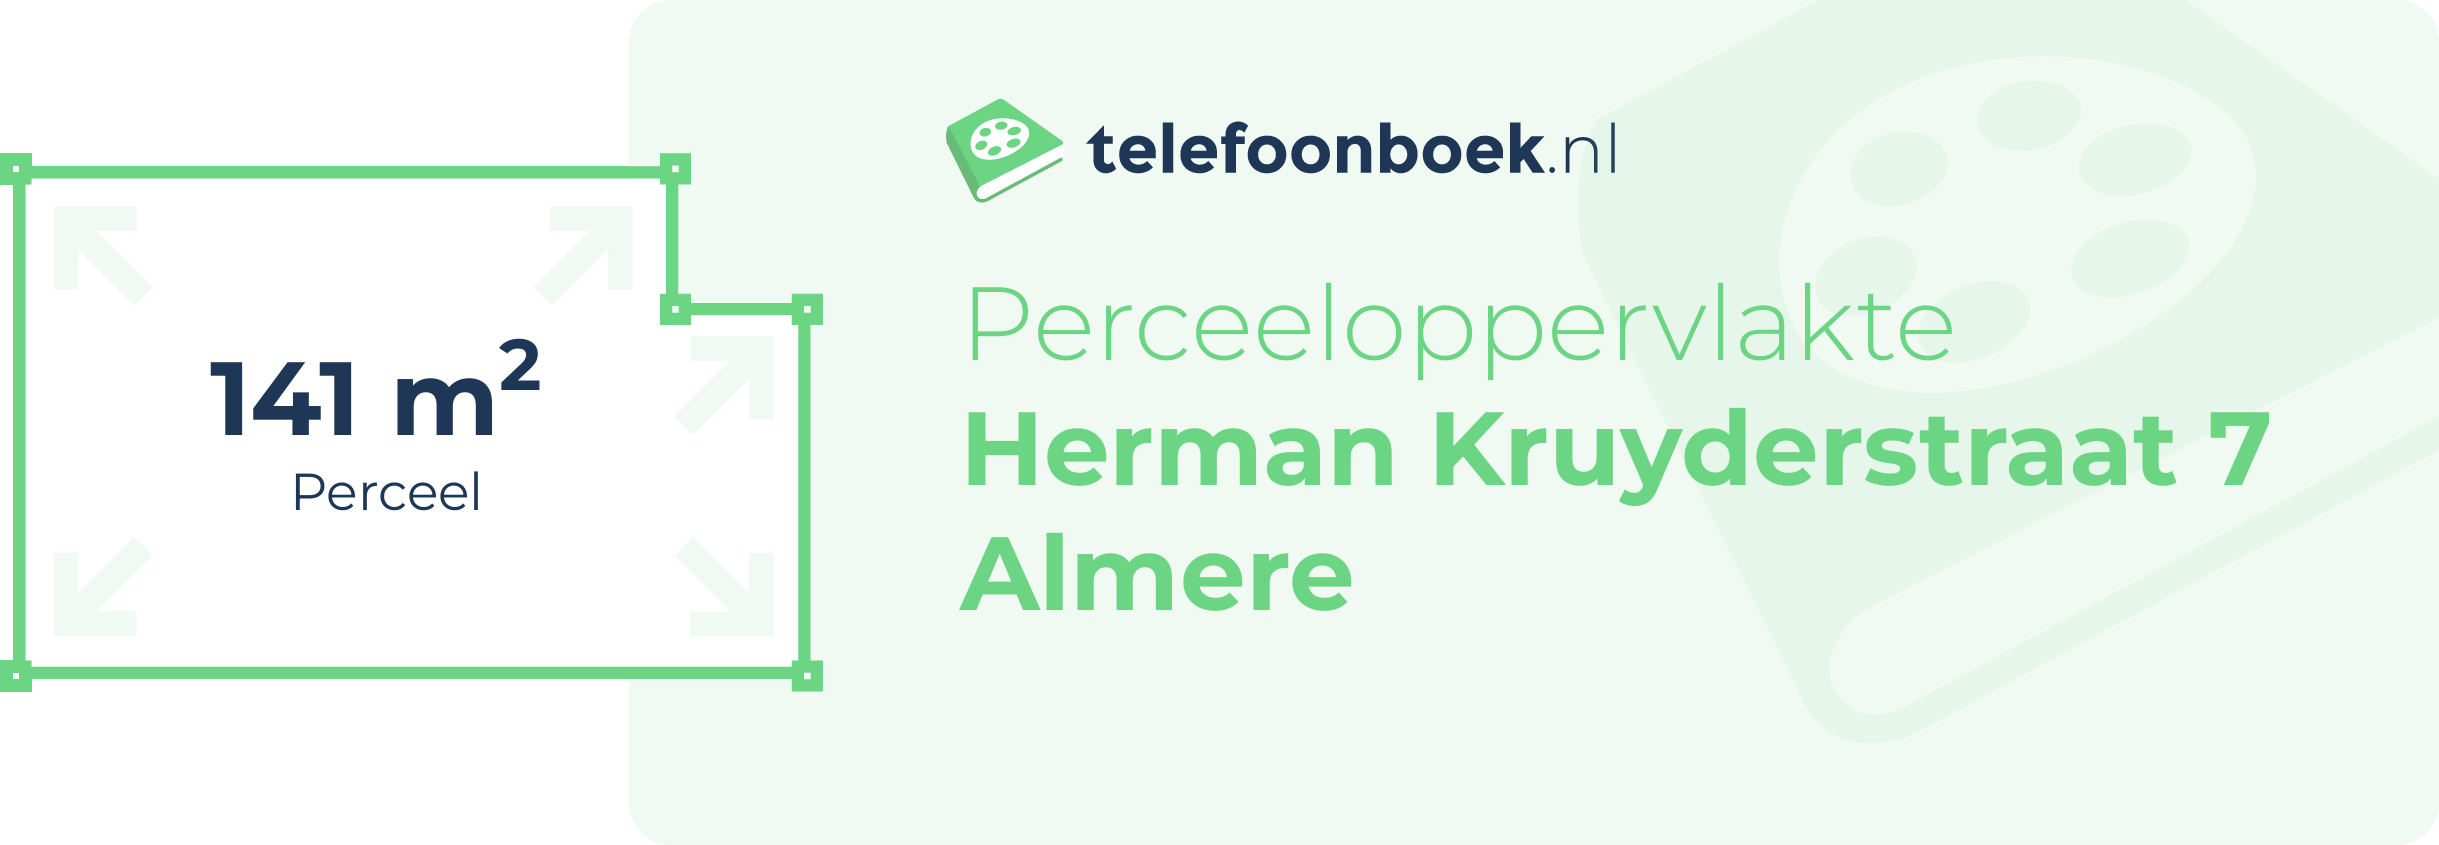 Perceeloppervlakte Herman Kruyderstraat 7 Almere